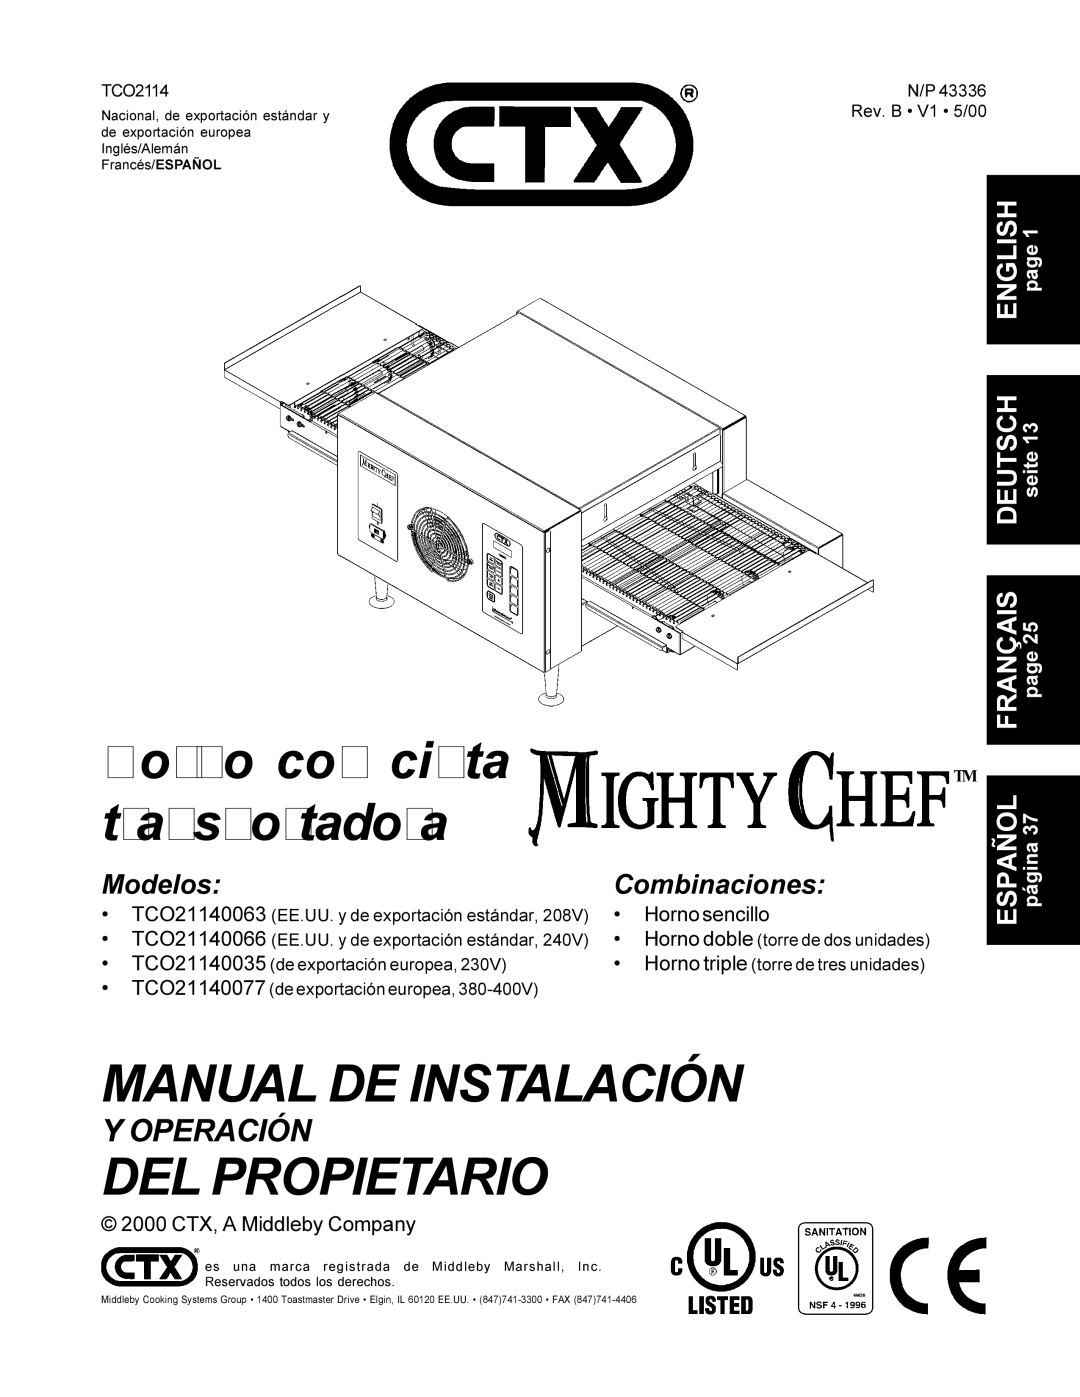 CTX TCO21140077, TCO21140063, TCO21140035, TCO21140066 manual Manual DE Instalación 